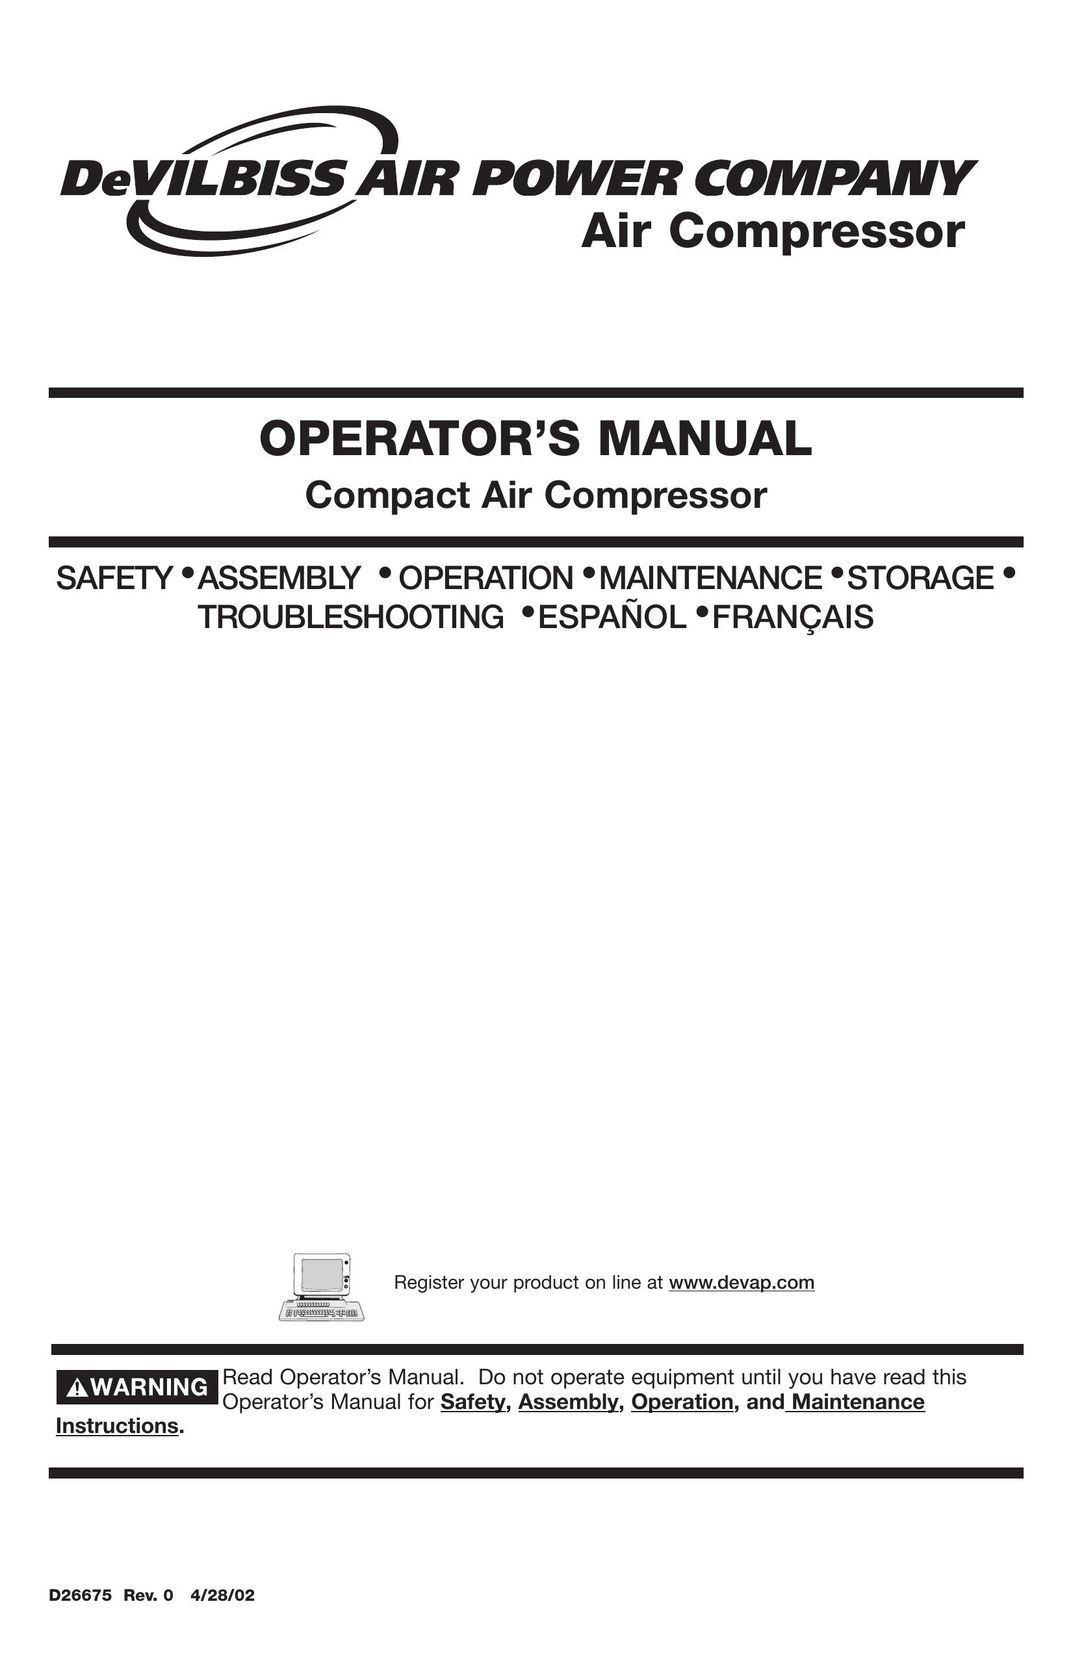 DeVillbiss Air Power Company D26675 Air Compressor User Manual